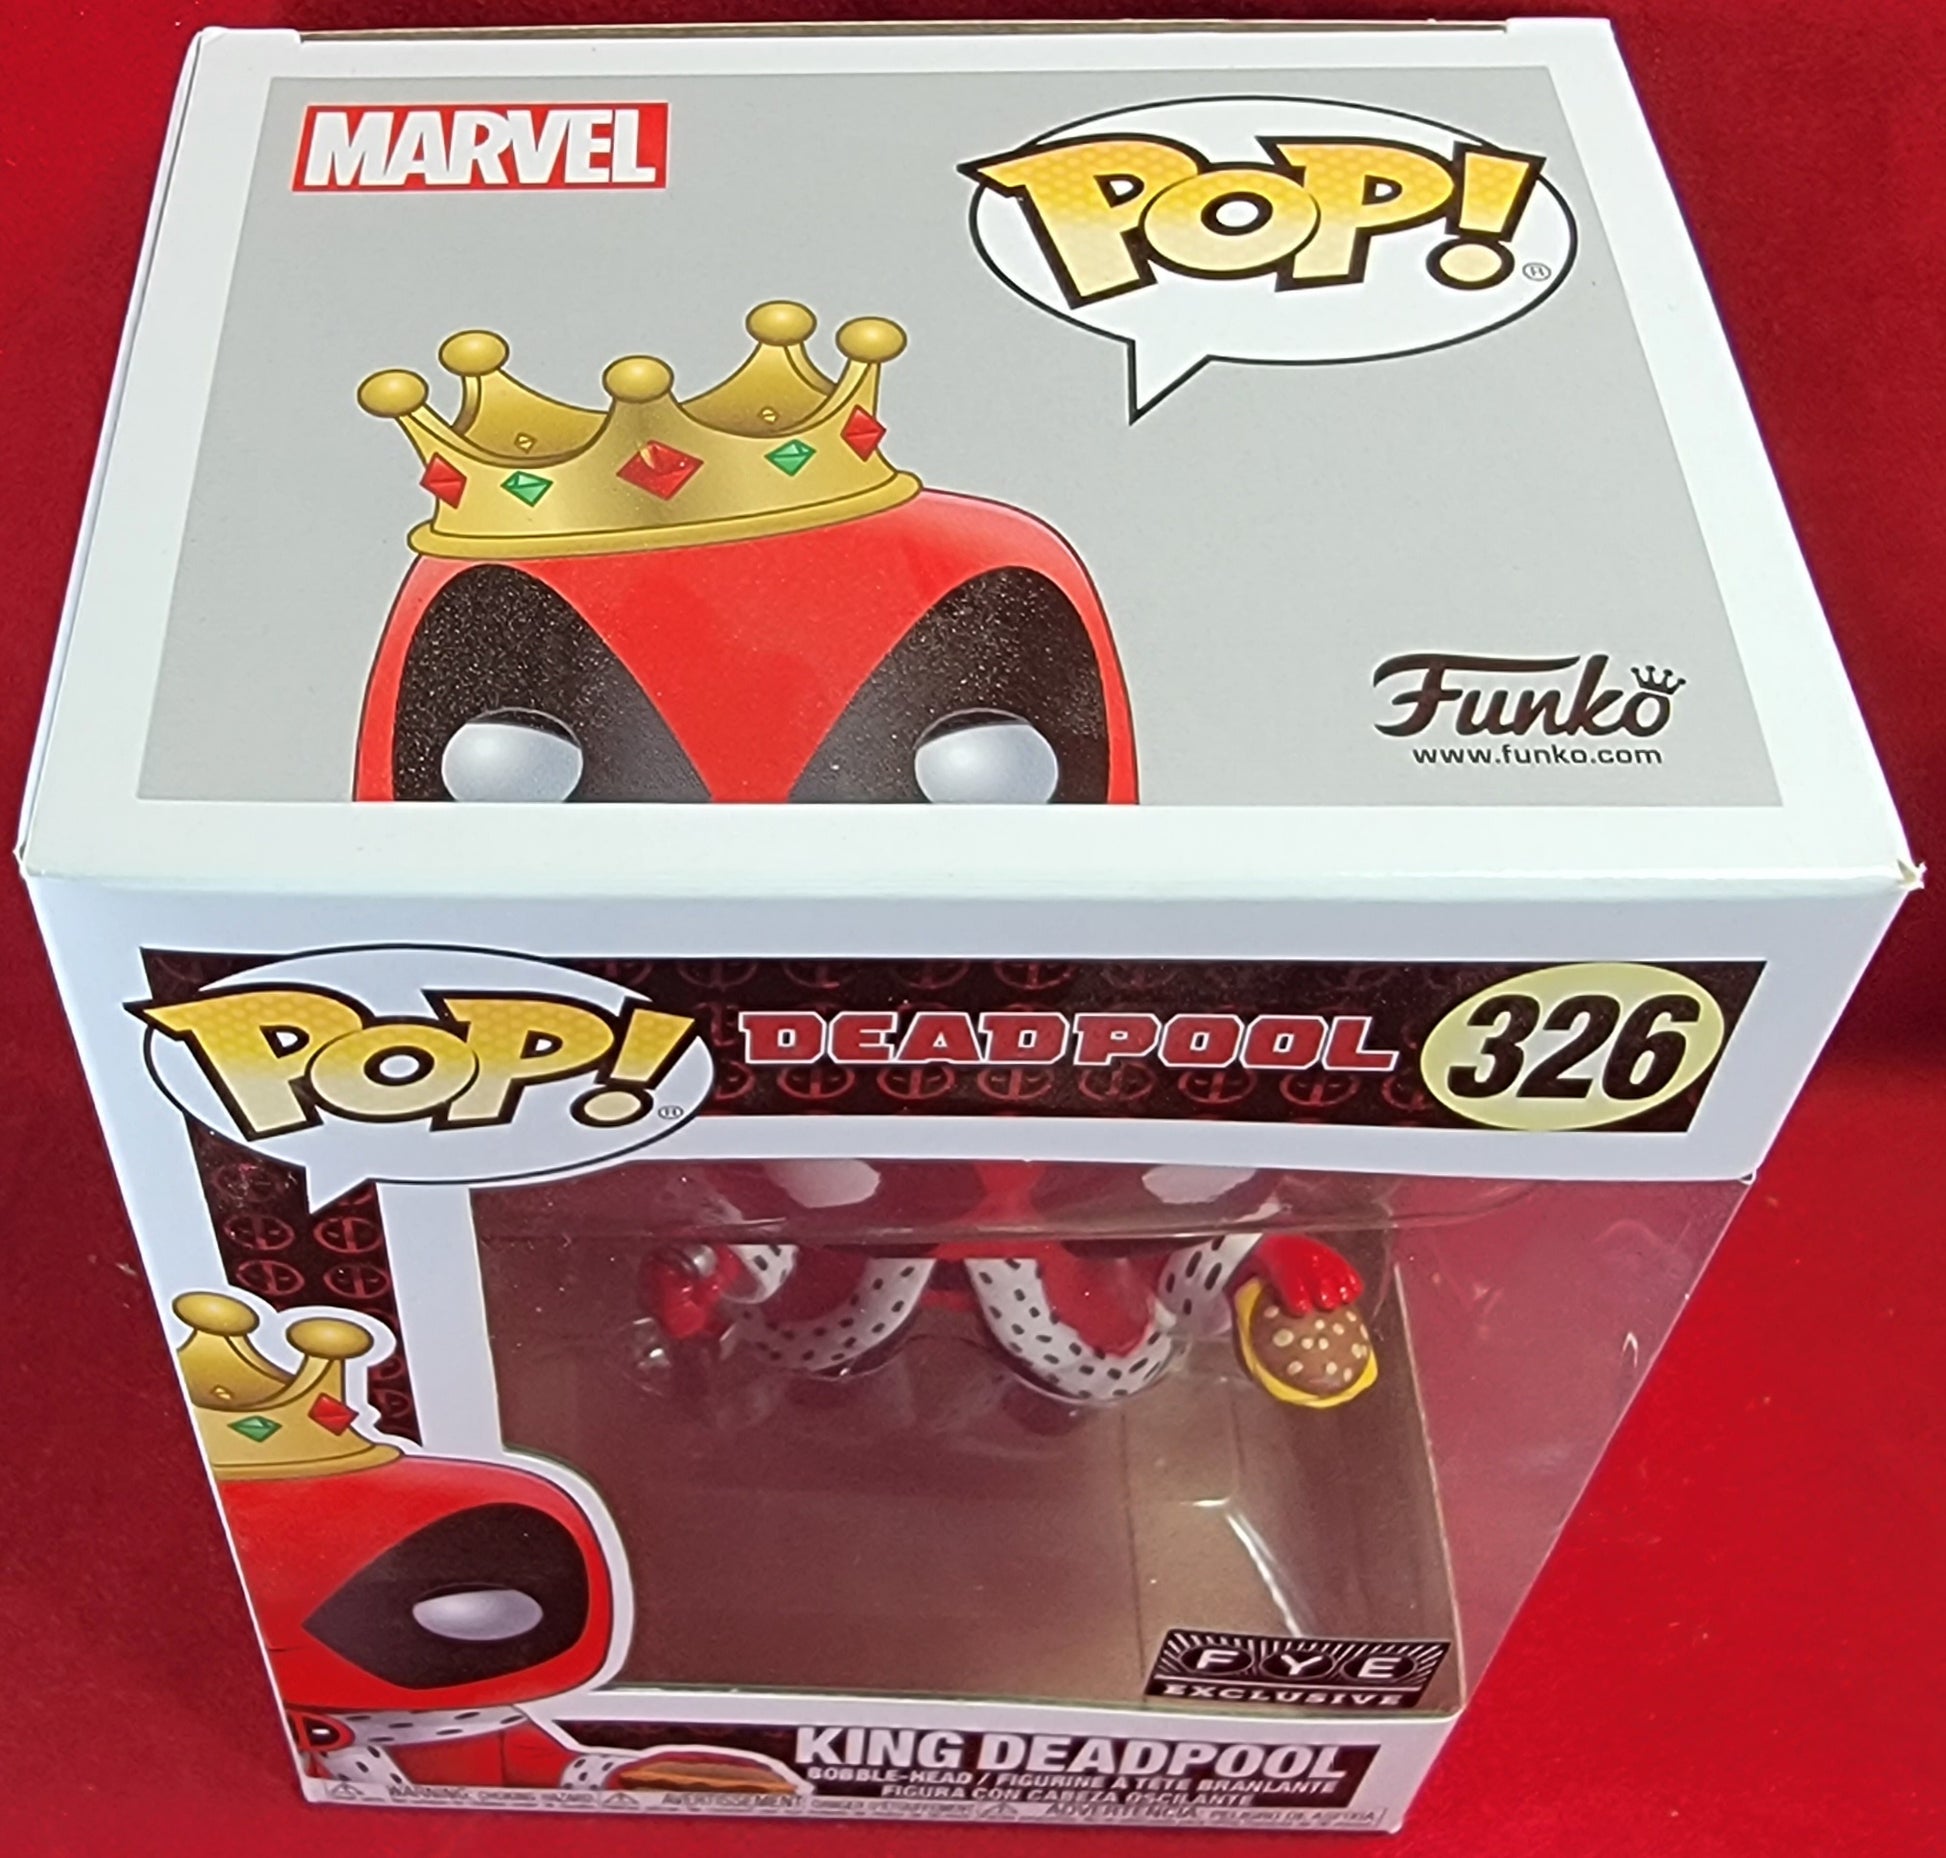 Funko Pop! Marvel Deadpool King Deadpool FYE Exclusive Bobble-Head